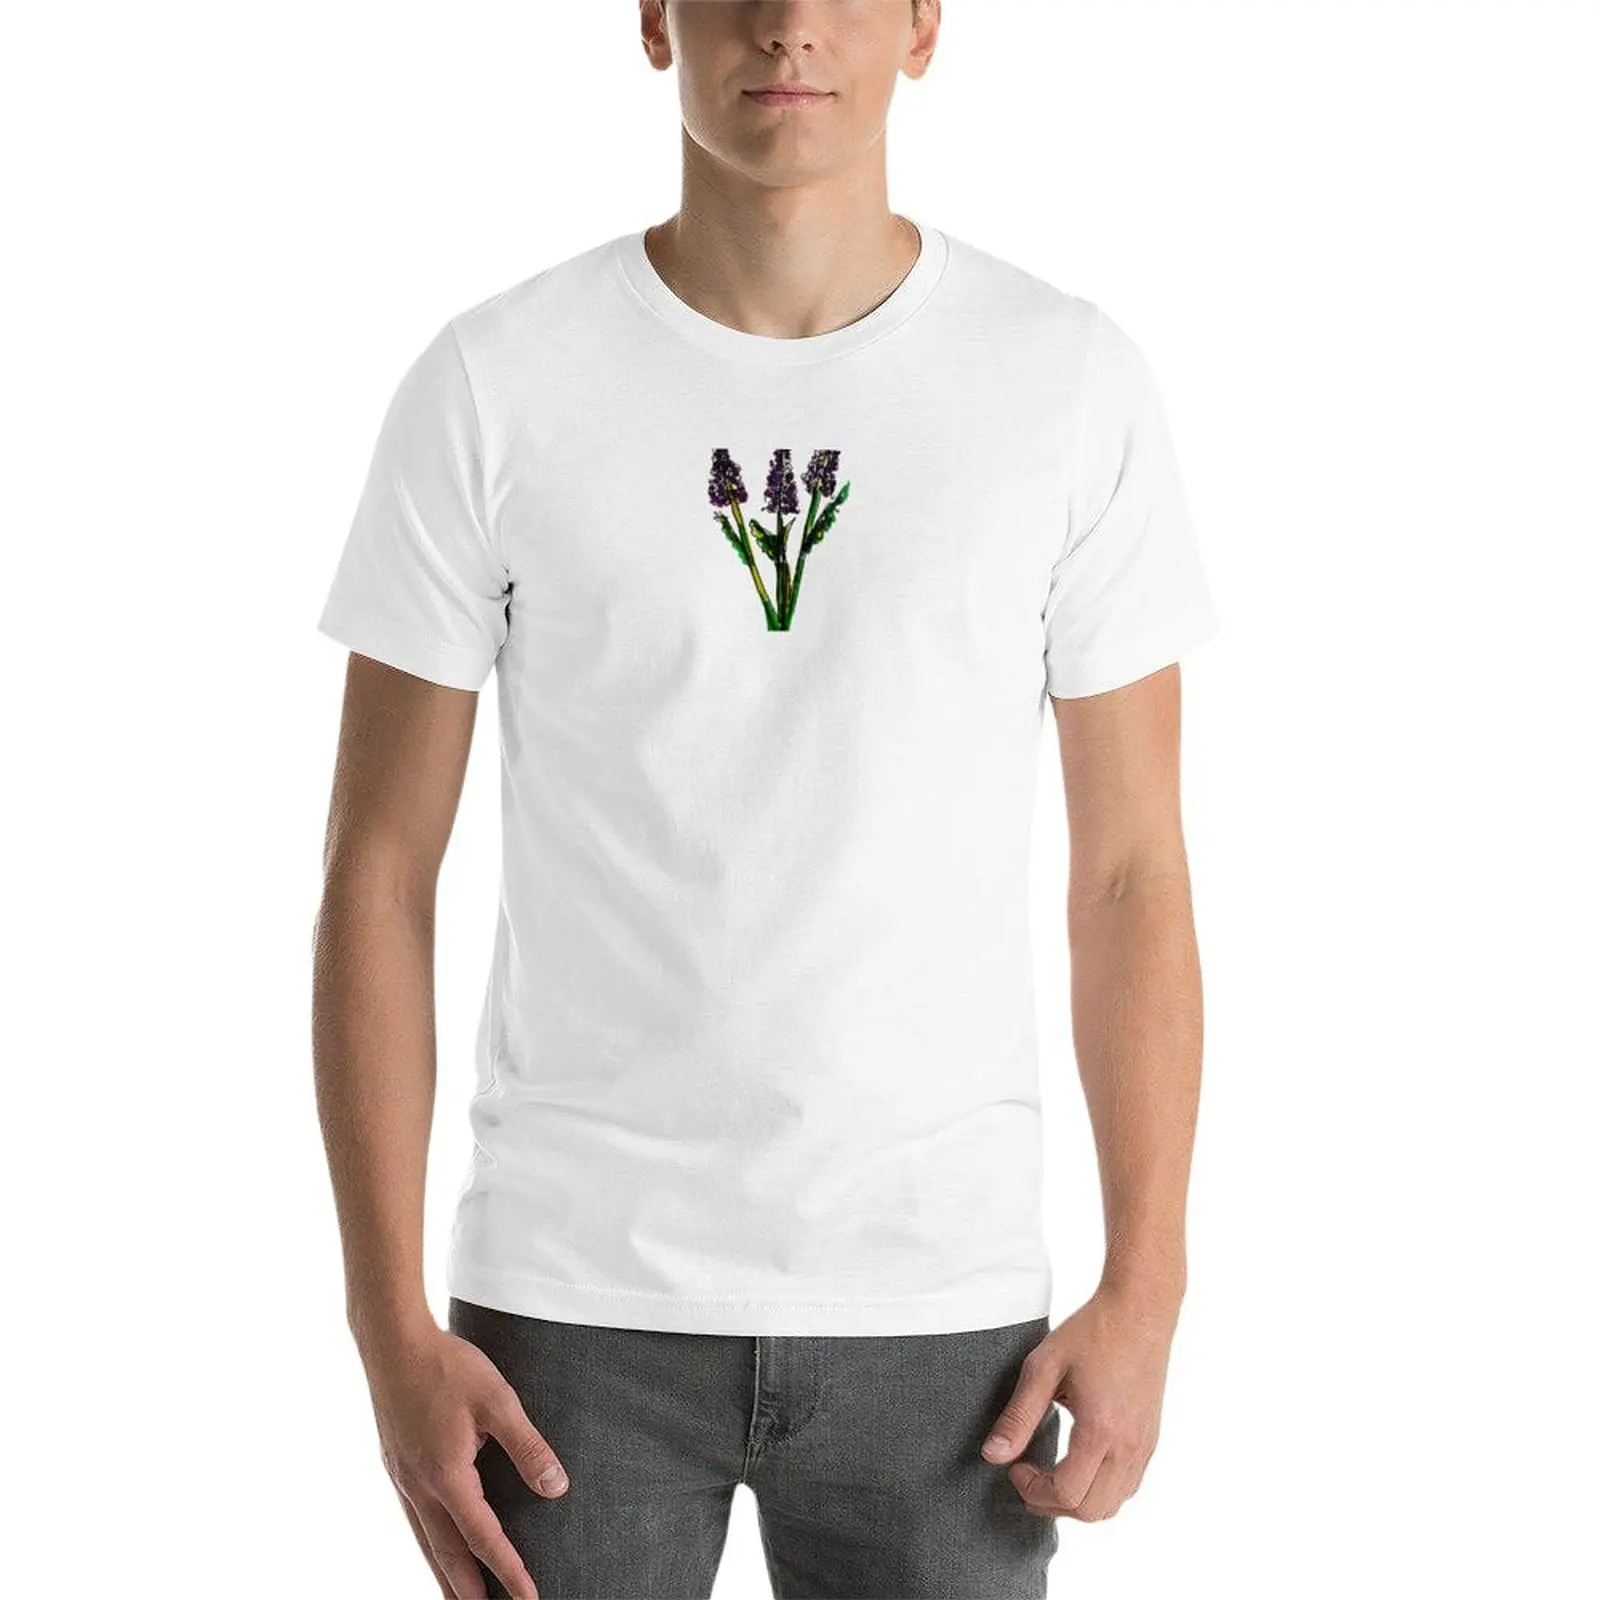 Новая лавандовая футболка, одежда с аниме, эстетическая одежда, одежда для мужчин Изображение 2